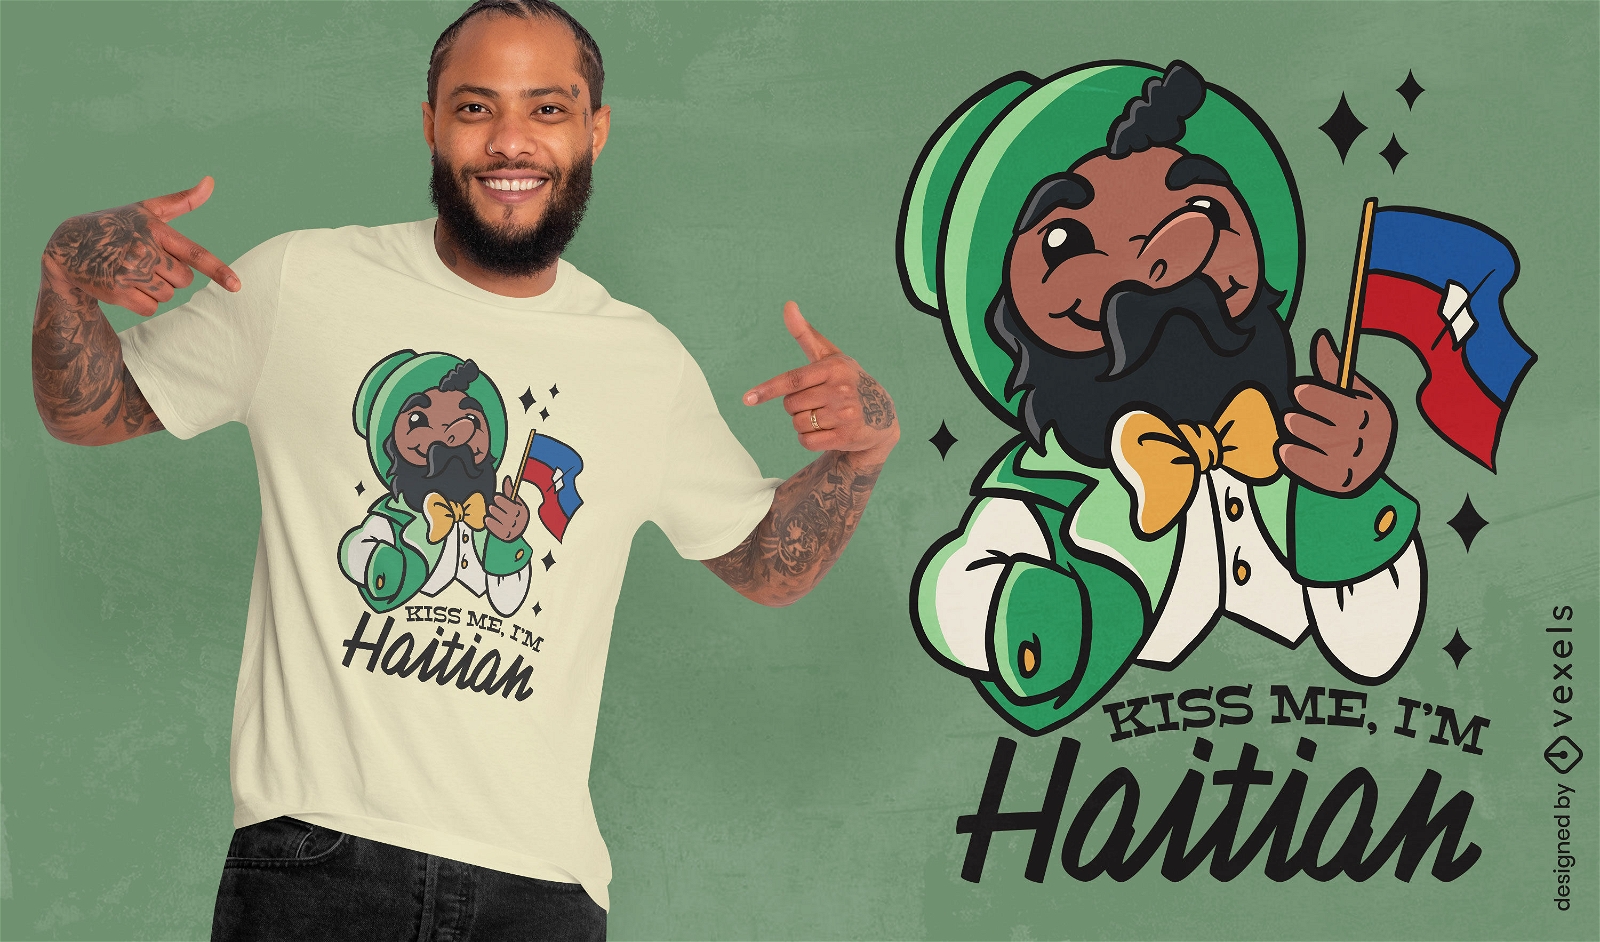 K?ss mich, ich bin ein haitianisches T-Shirt-Design